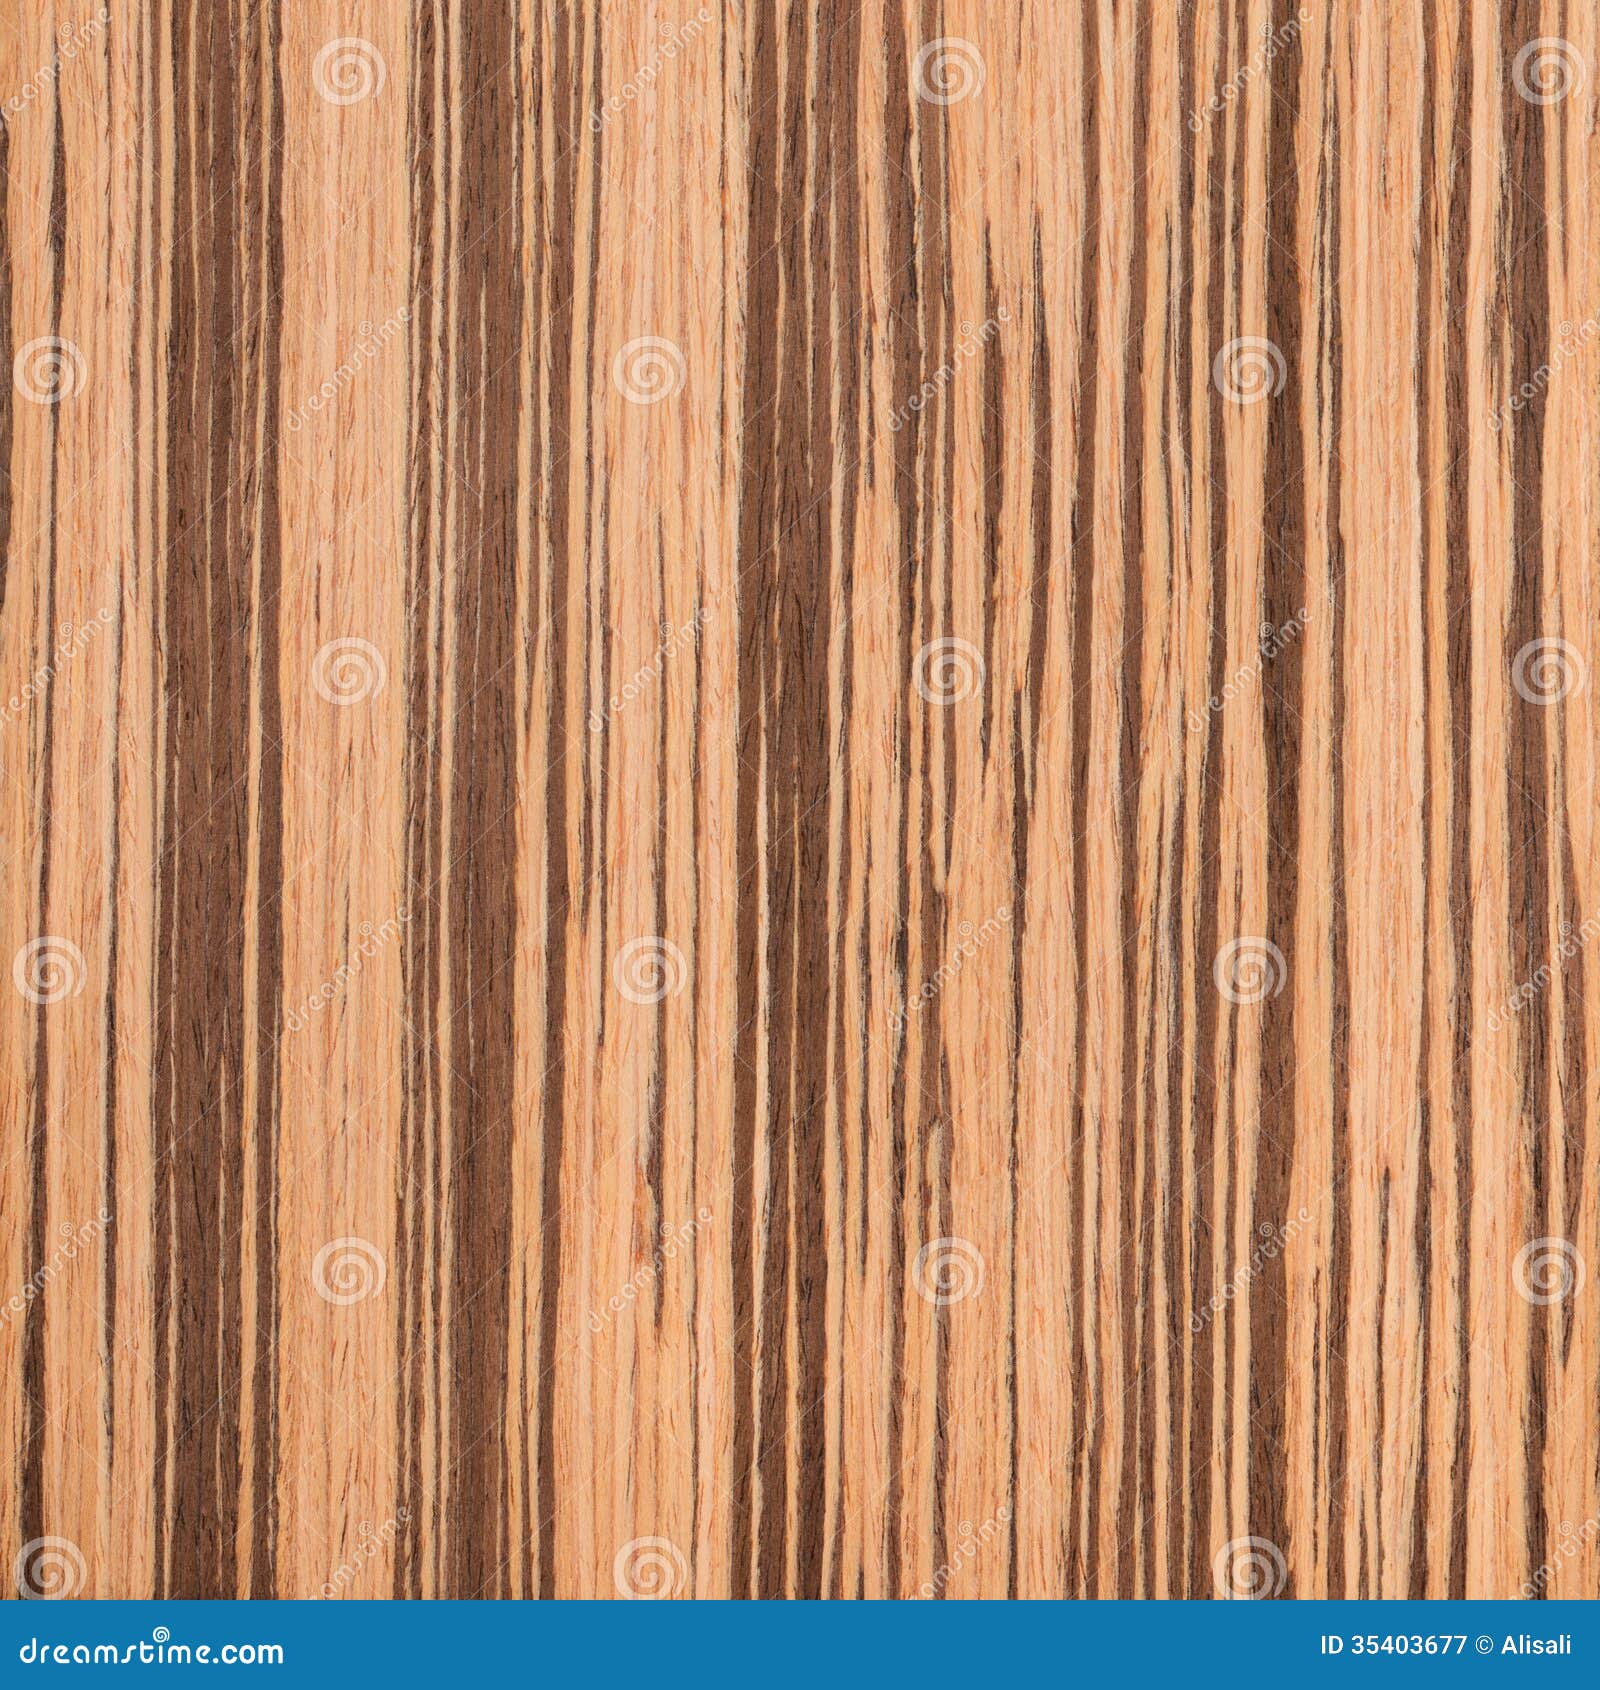 texture of zebrano, wood grain